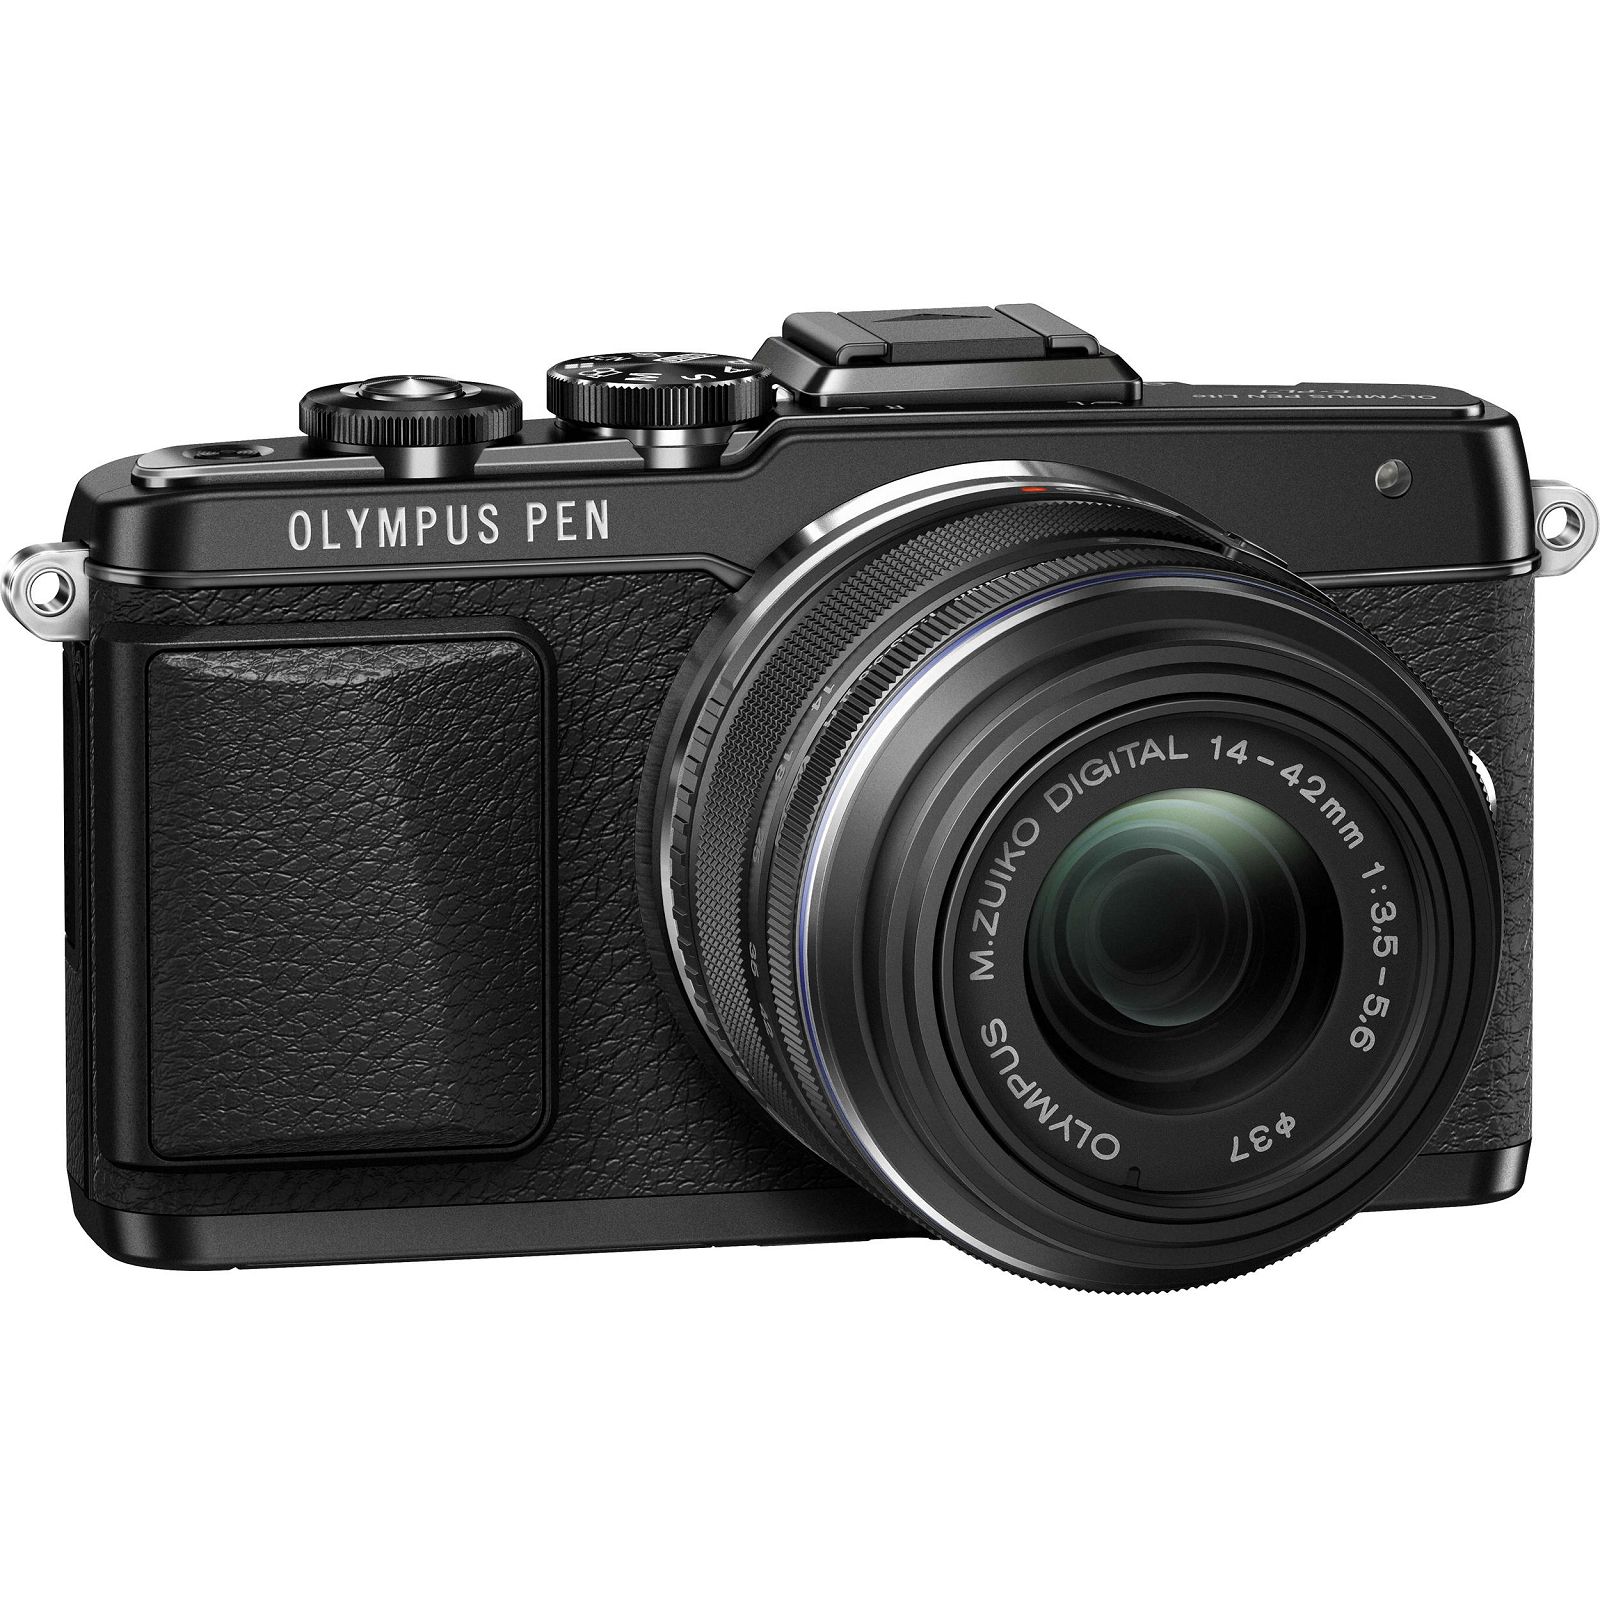 Olympus E-PL7 + 14-42mm black EZ-M1442 II R black Kit - incl. Charger + Battery 14-42 Micro Four Thirds MFT - PEN Camera digitalni fotoaparat V205071BE000